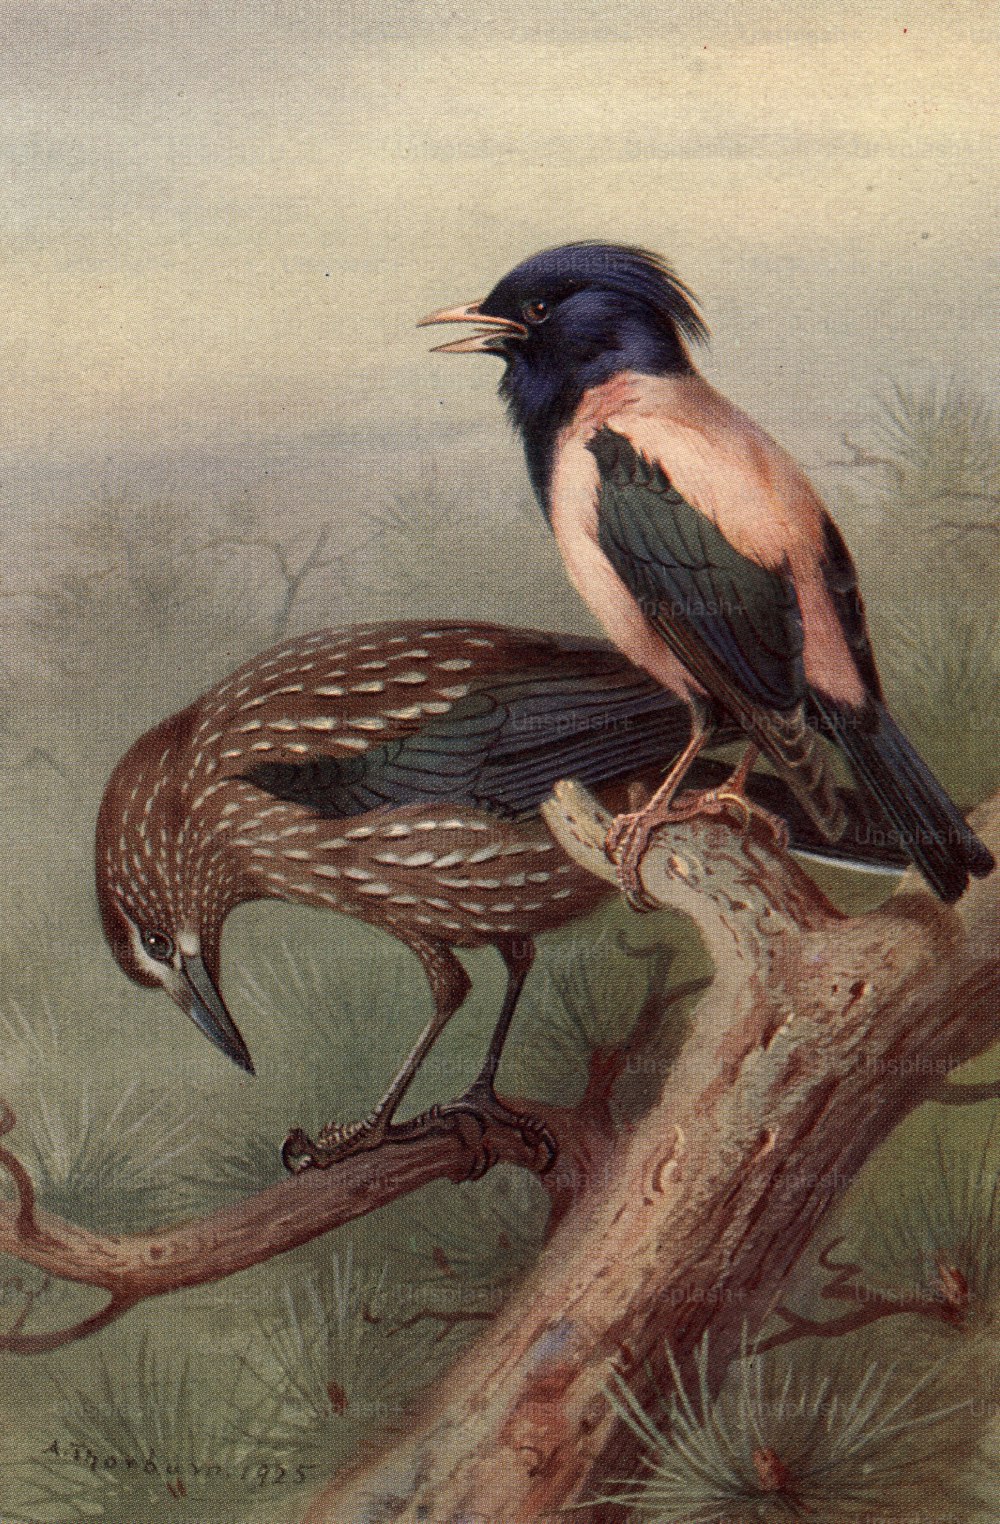 um 1850: Ein Nussknacker, ein Vogel der Krähenfamilie und ein rosafarbener Star.  (Foto von Hulton Archive / Getty Images)